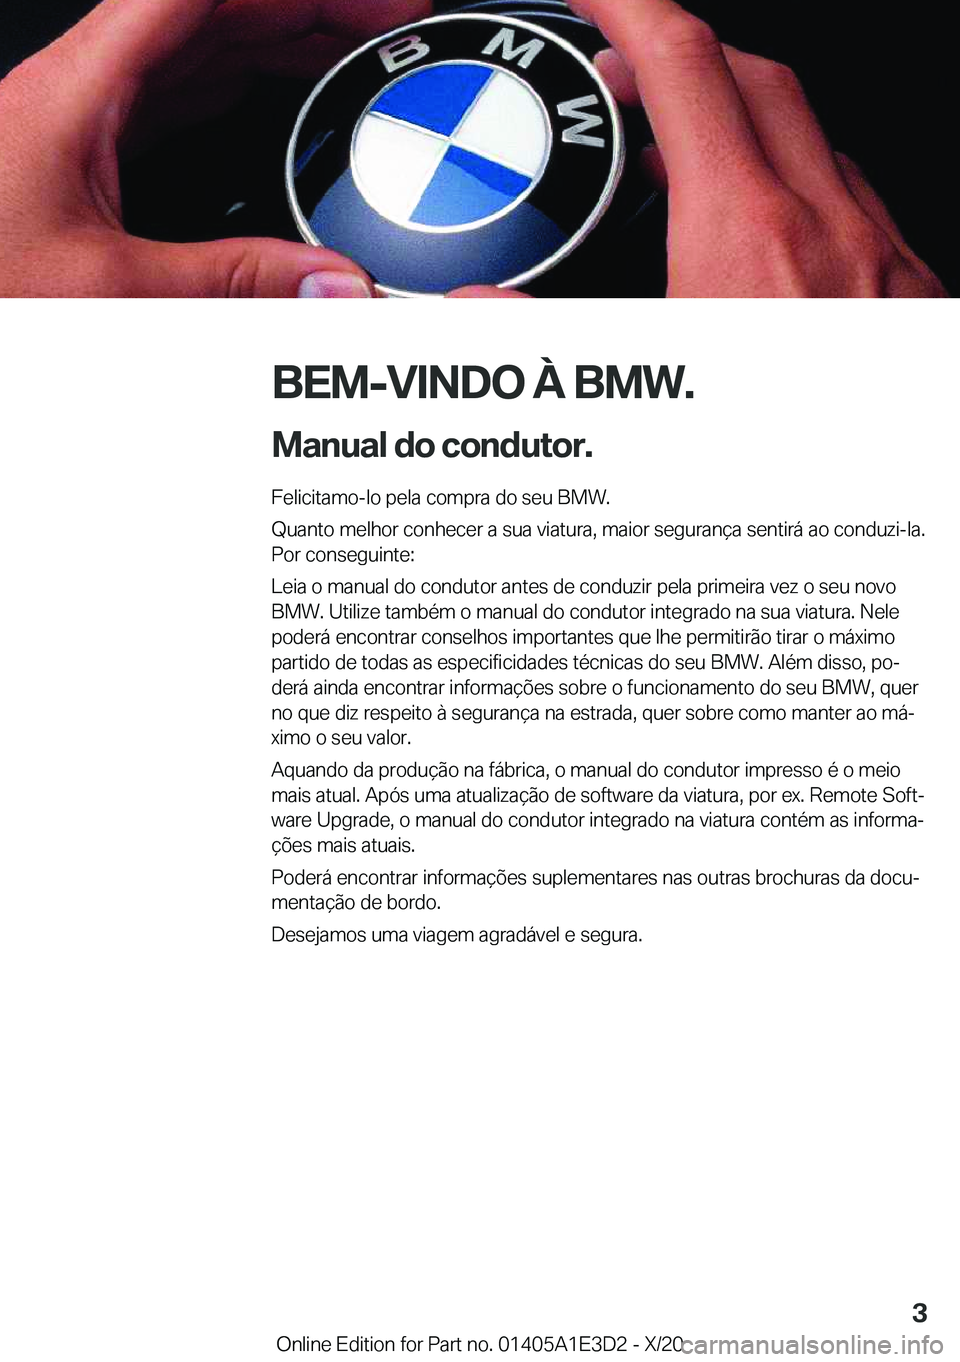 BMW M4 2021  Manual do condutor (in Portuguese) �B�E�M�-�V�I�N�D�O��À��B�M�W�.
�M�a�n�u�a�l��d�o��c�o�n�d�u�t�o�r�. �F�e�l�i�c�i�t�a�m�o�-�l�o��p�e�l�a��c�o�m�p�r�a��d�o��s�e�u��B�M�W�.
�Q�u�a�n�t�o��m�e�l�h�o�r��c�o�n�h�e�c�e�r��a��s